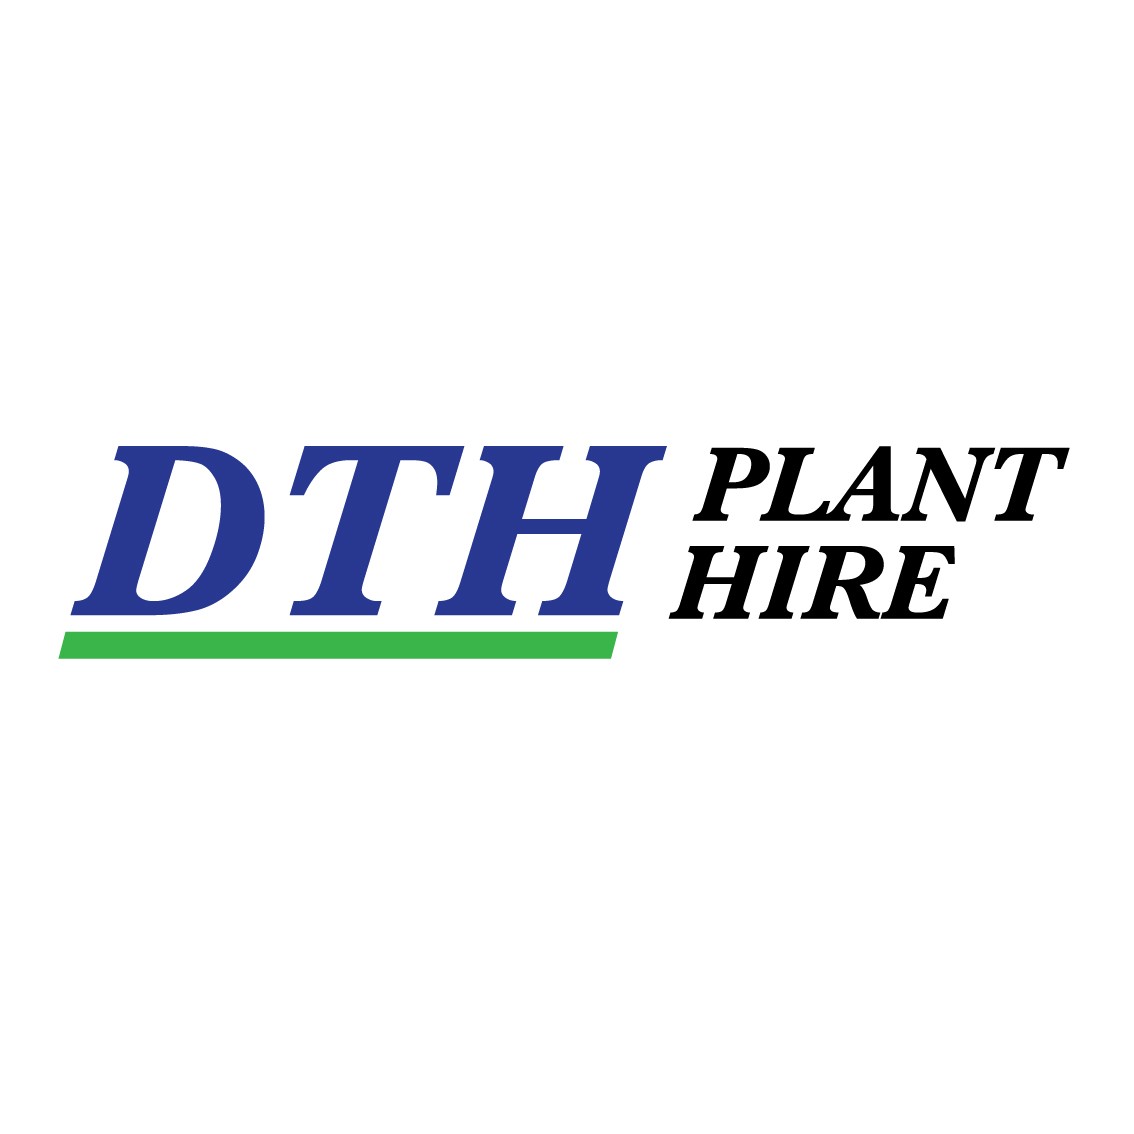 DTH PLANT HIRE LTD | LinkedIn